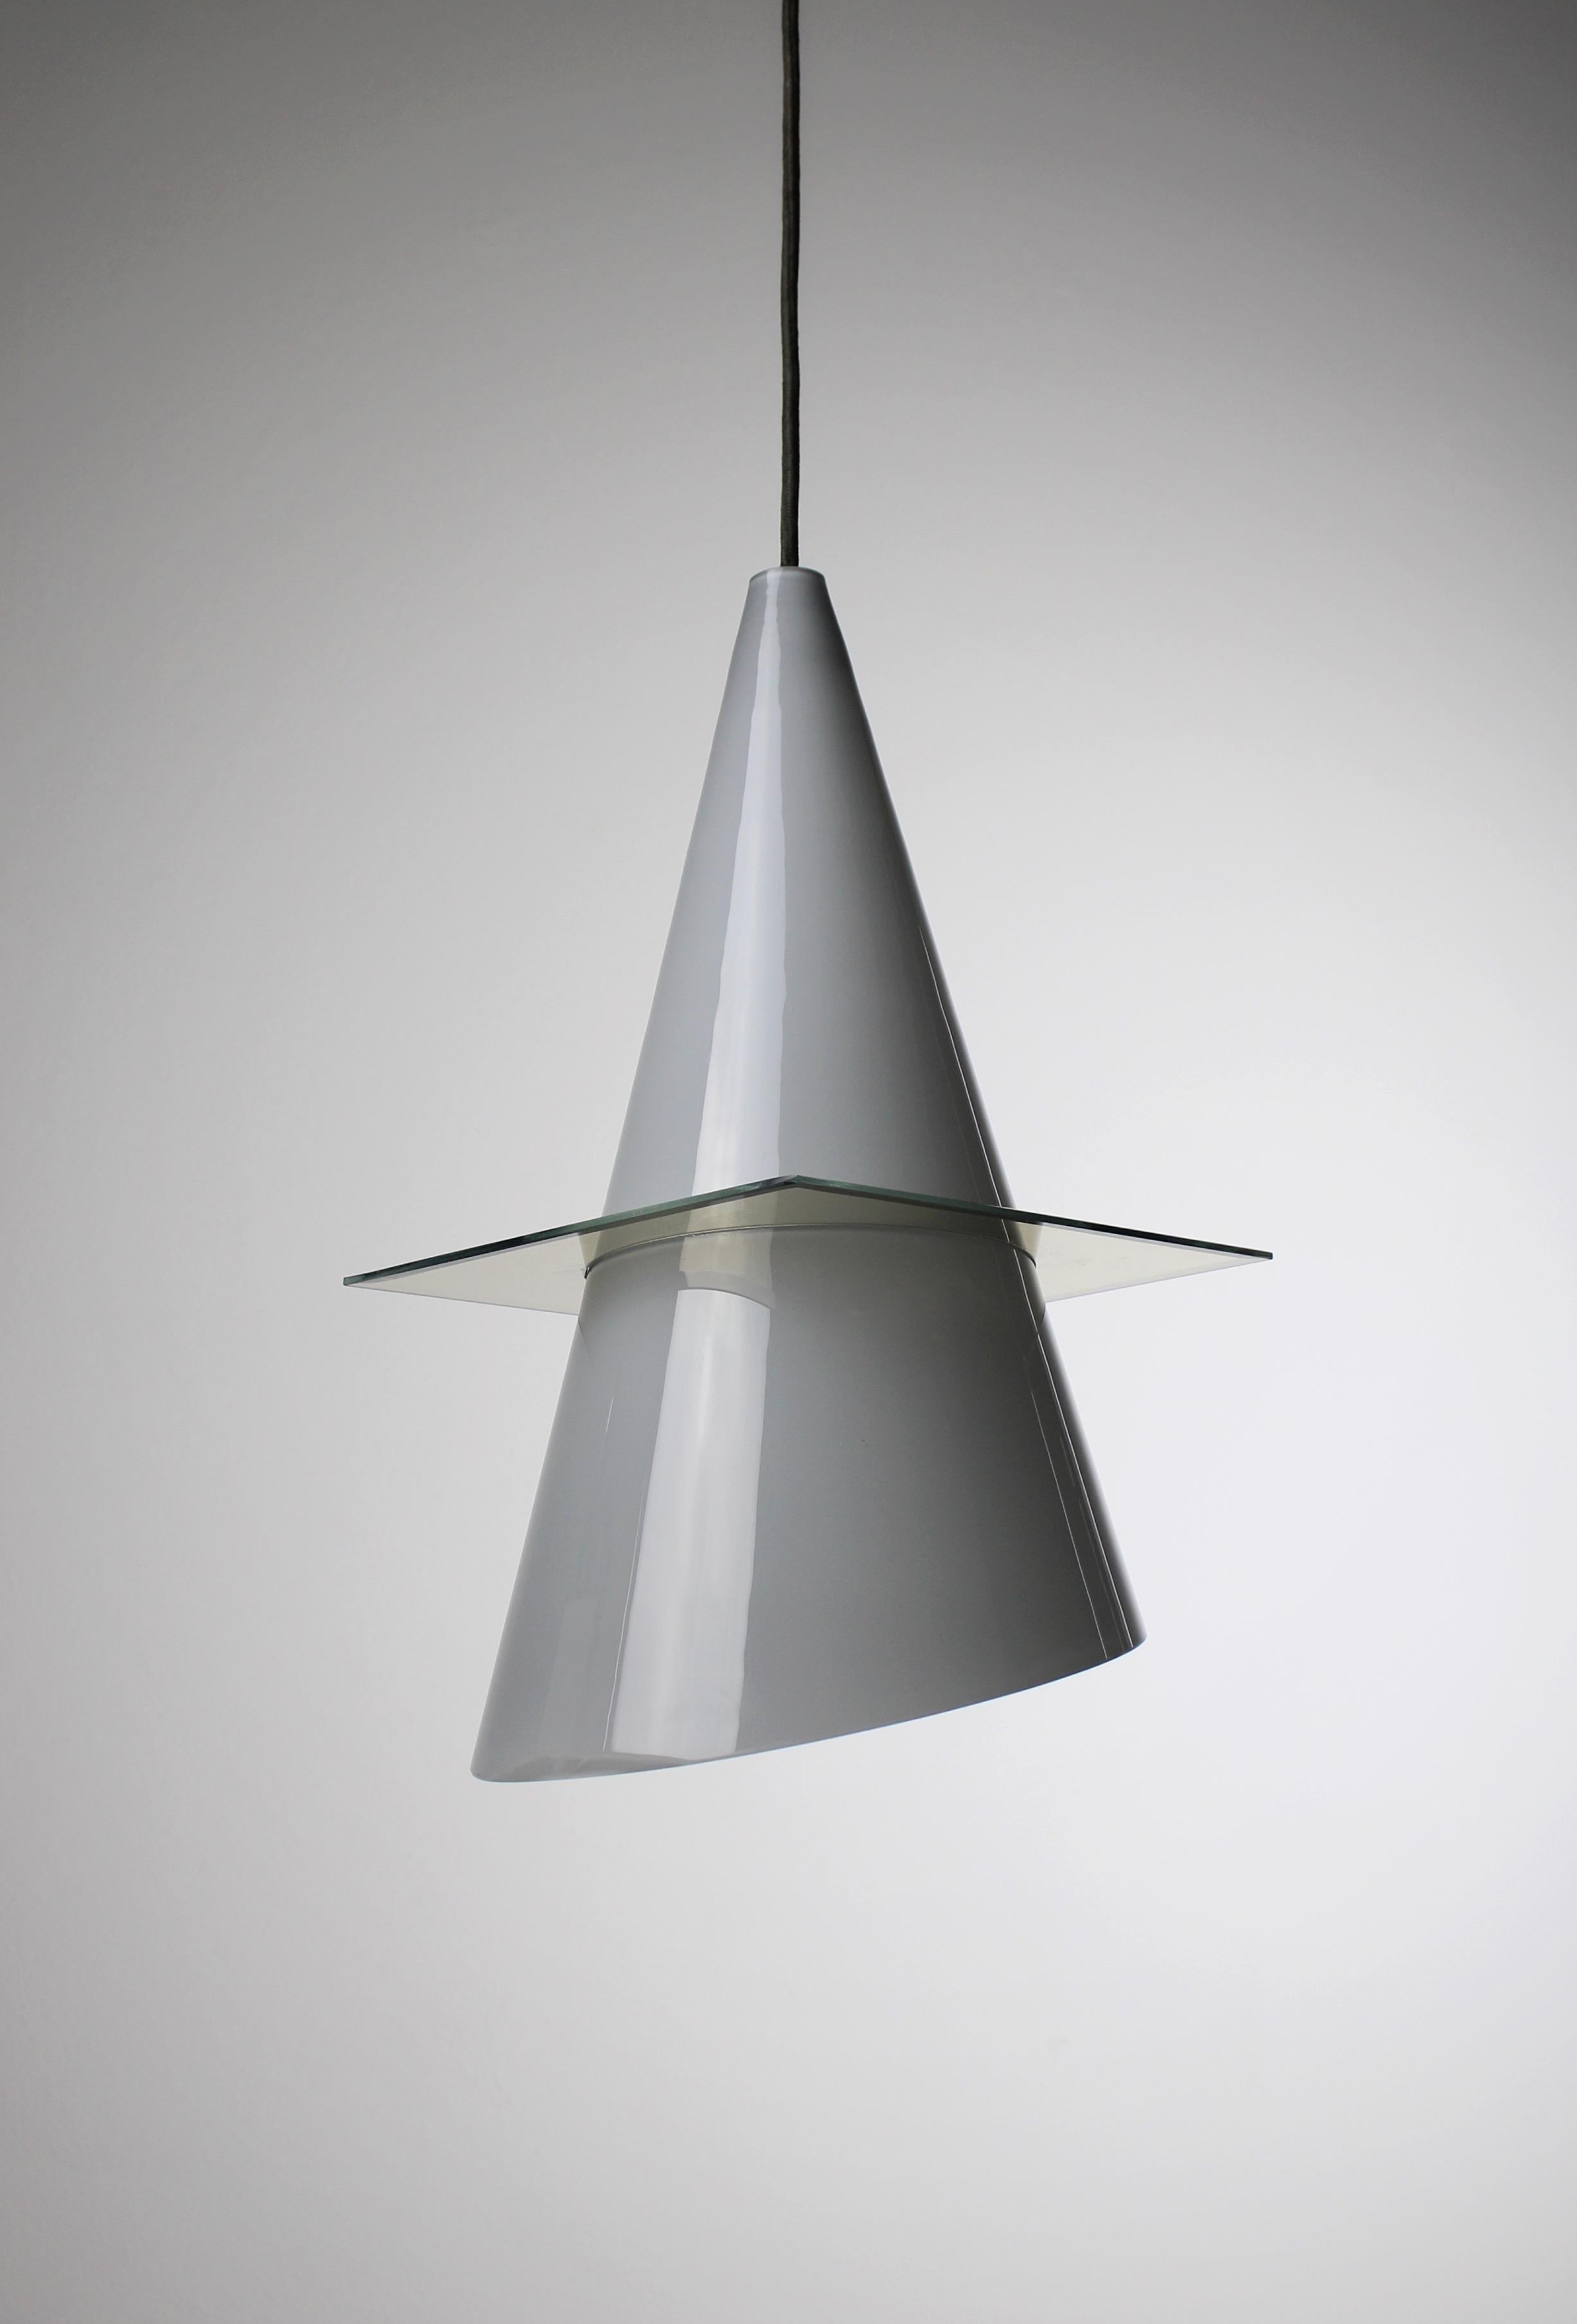 La lampe suspendue OZ, conçue par Daniele Puppa et Franco Raggi en 1980. Fabriquée par le célèbre fabricant de luminaires Fontana Arte dans le nord de l'Italie au cours des années 1980, cette pièce exquise affiche un design d'une modernité